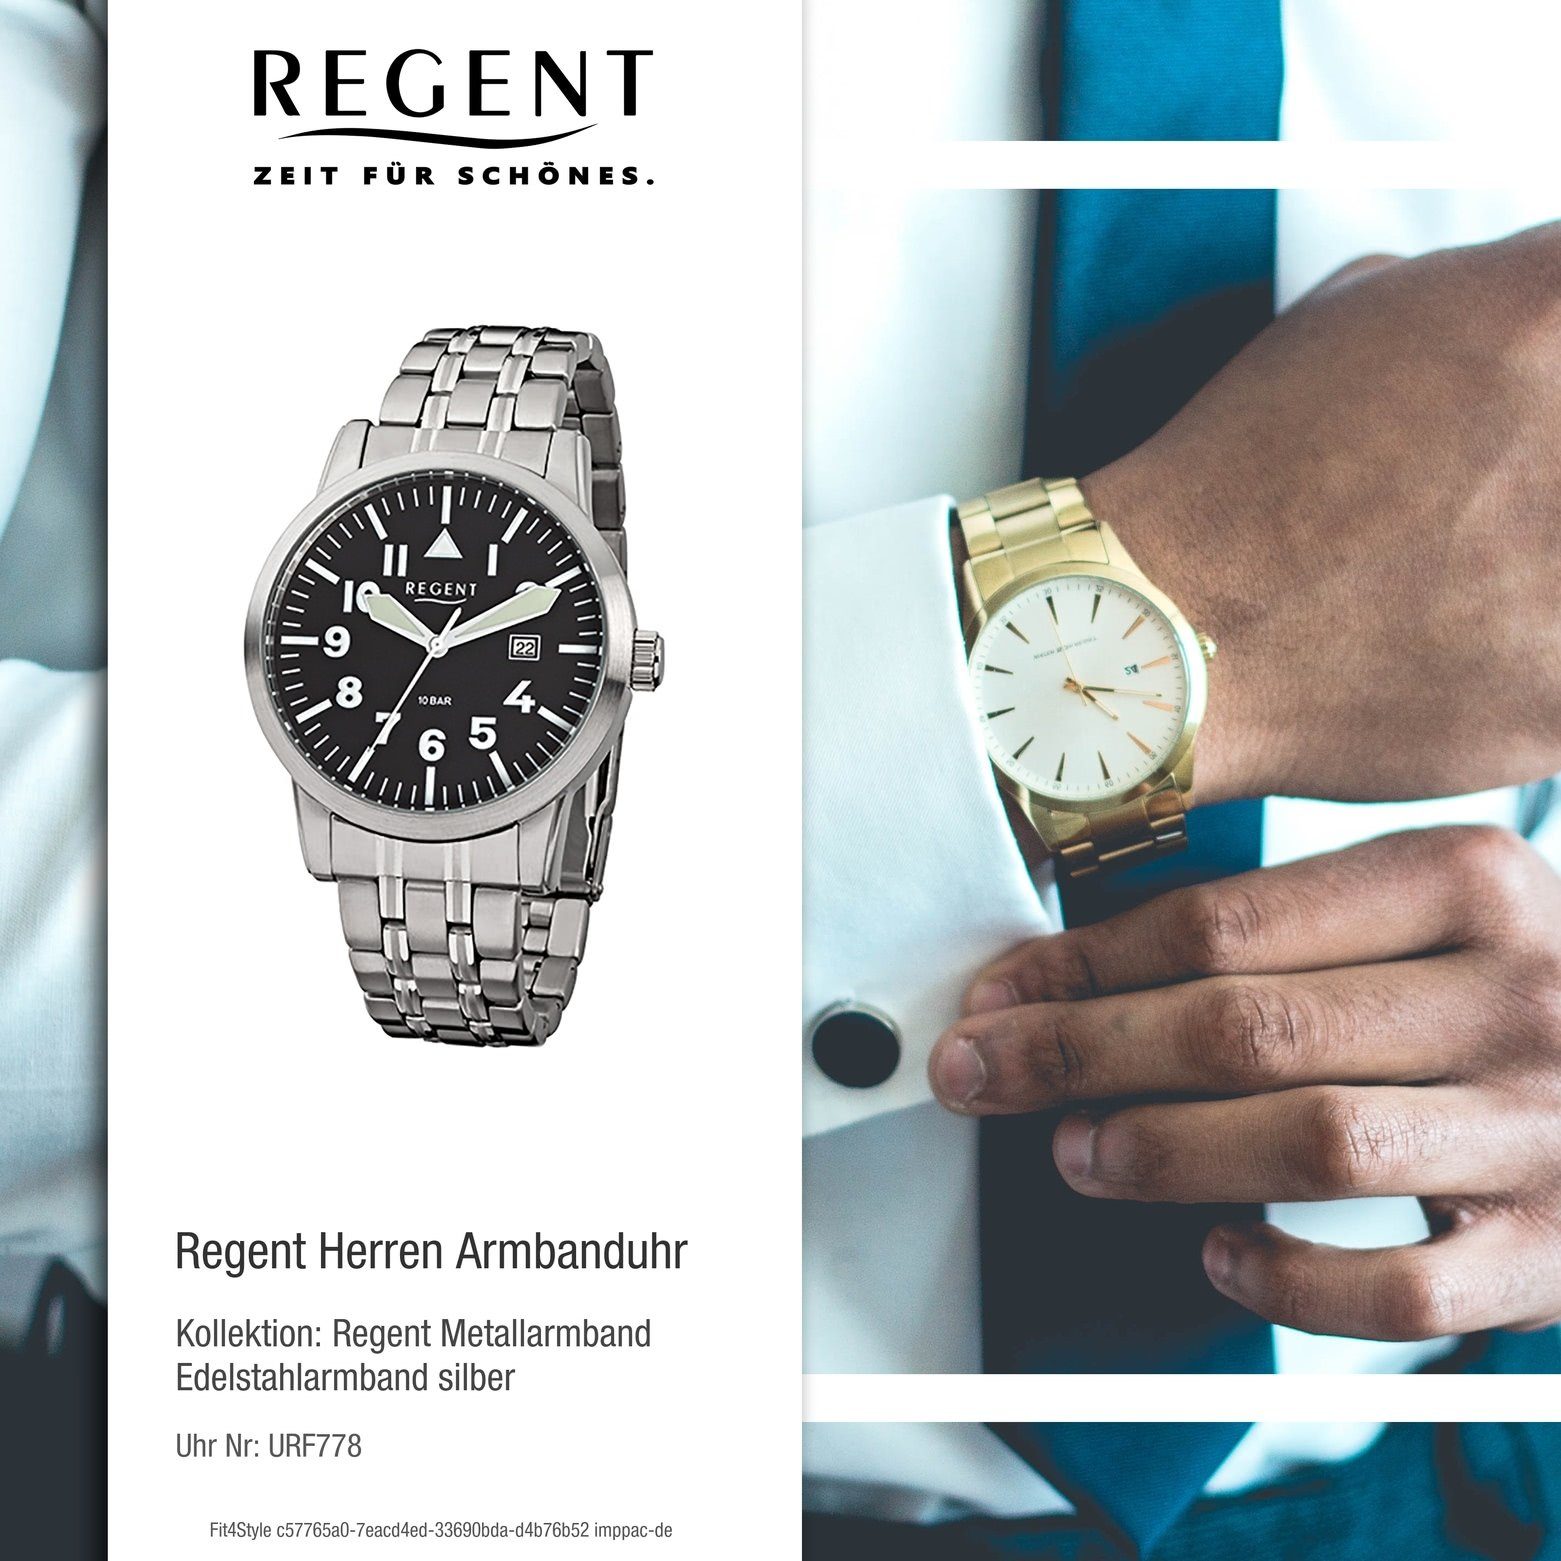 42mm), Regent Regent Herren-Armbanduhr groß Armbanduhr Analog, Quarzuhr (ca. Edelstahlarmband Herren silber rund,